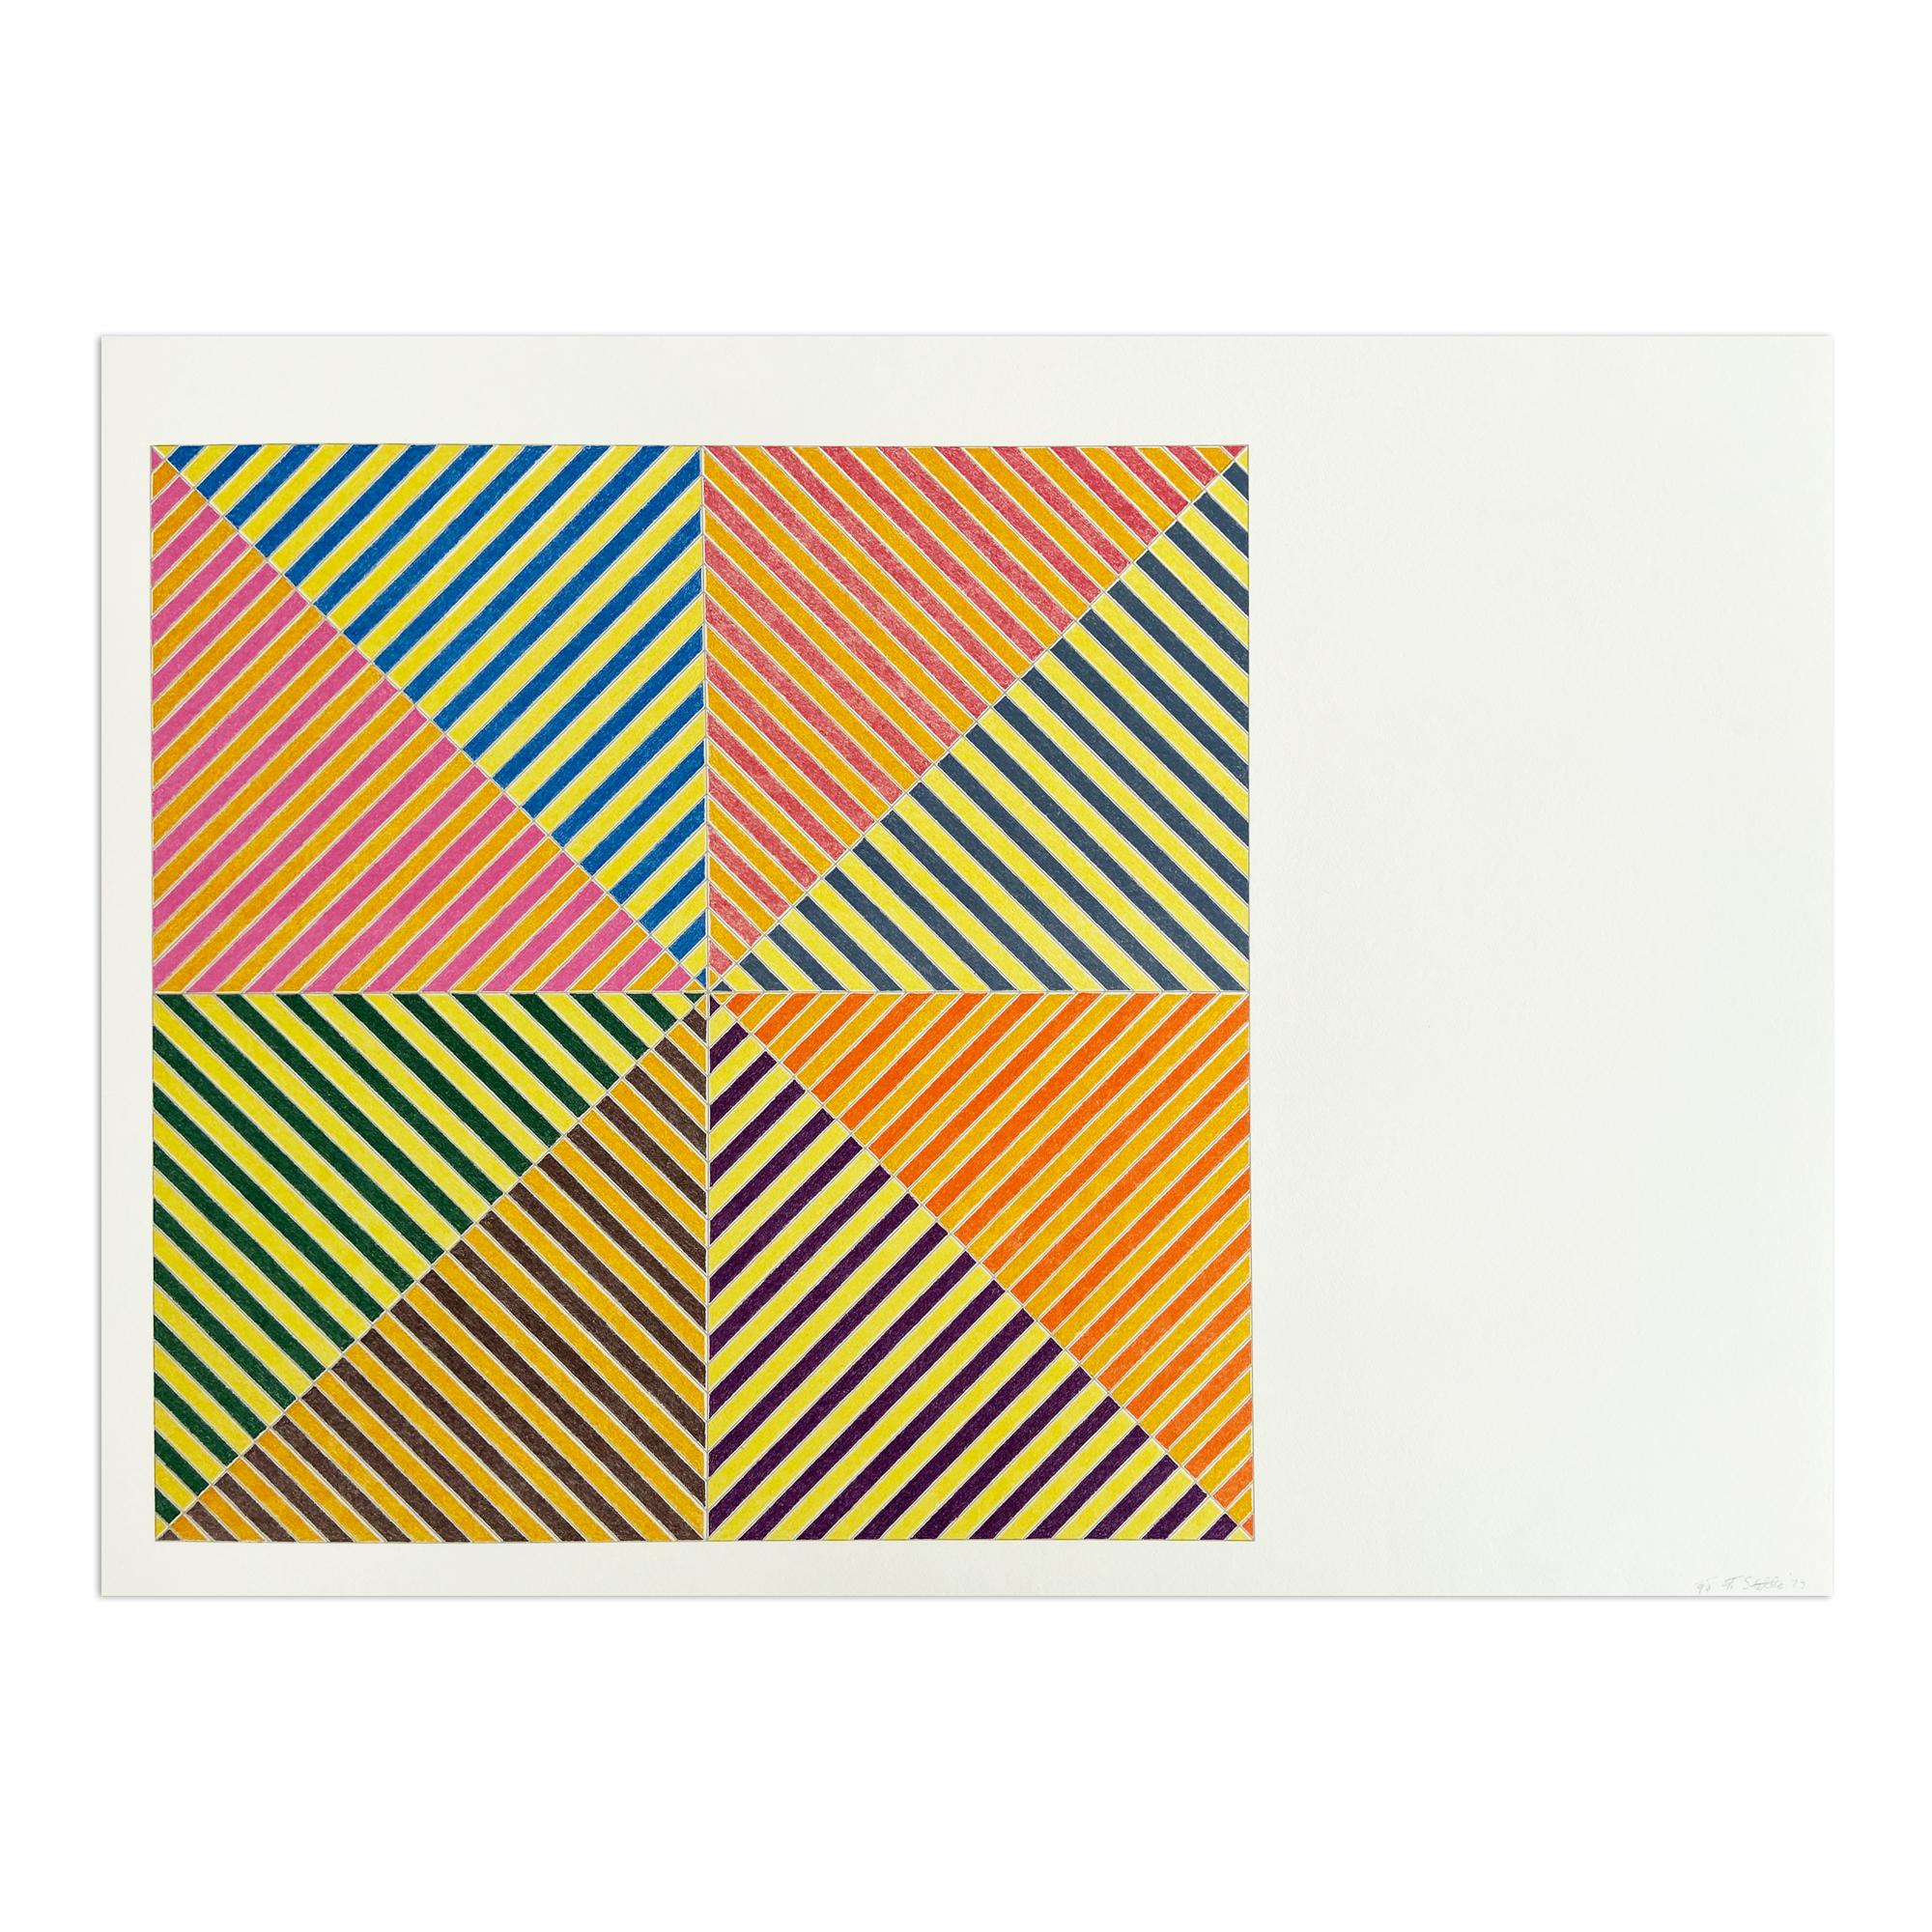 Frank Stella Interior Print - Sidi Ifni, Sidi Ifni (from Hommage à Picasso), Abstract Geometric, Minimalism